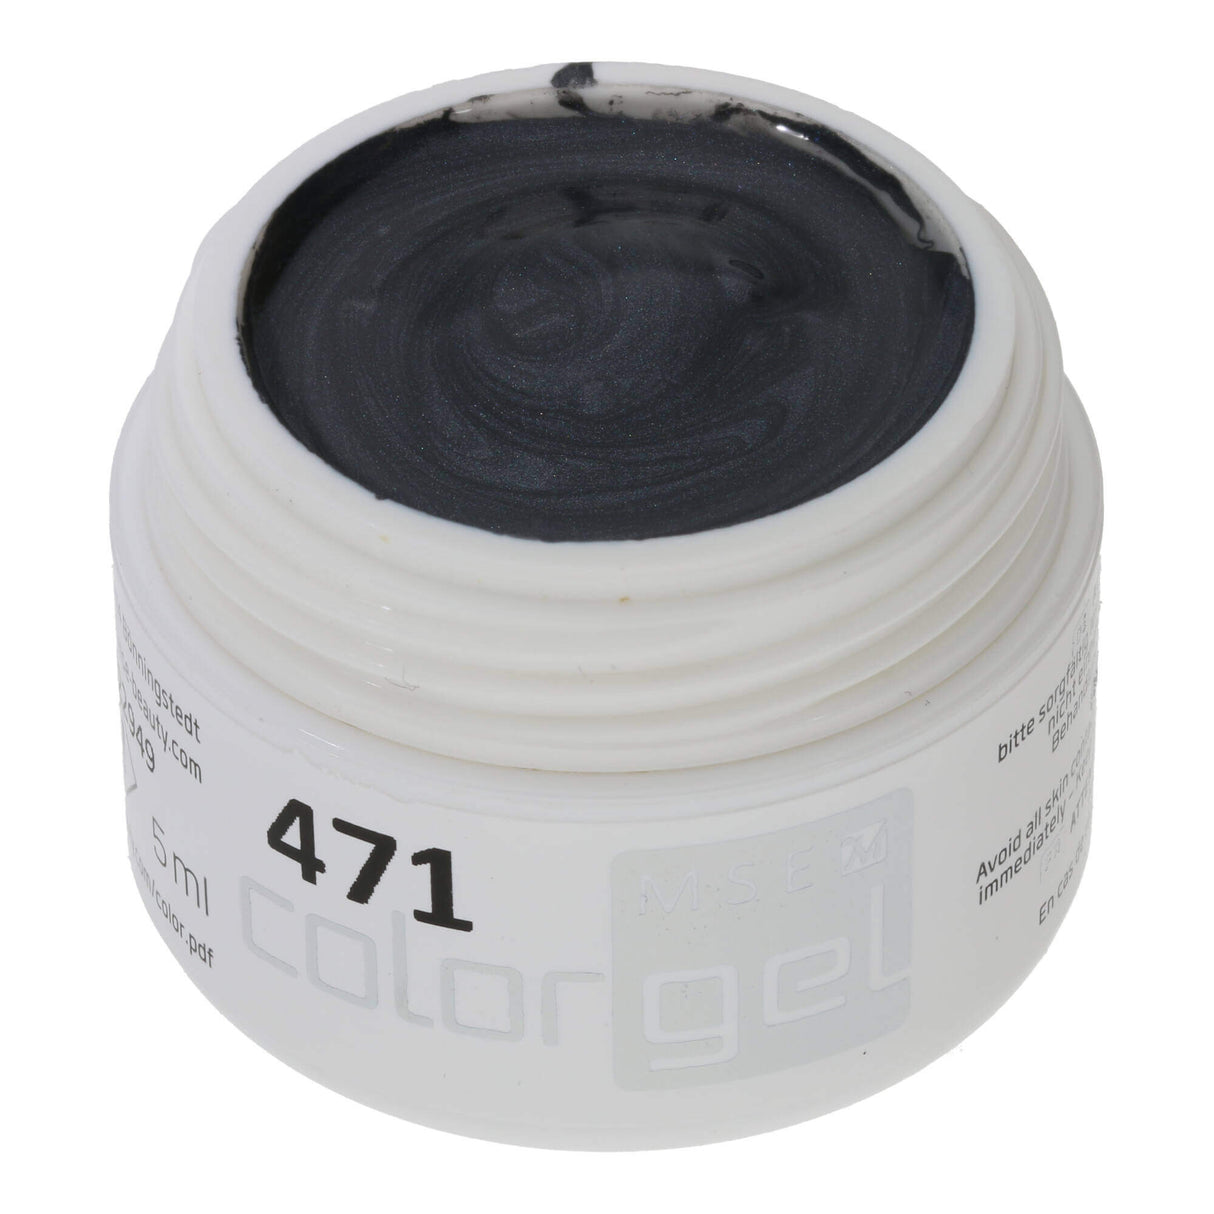 Gel tạo màu # 471 Premium-EFFEKT 5ml đen-xám với ánh kim sa nhẹ nhàng